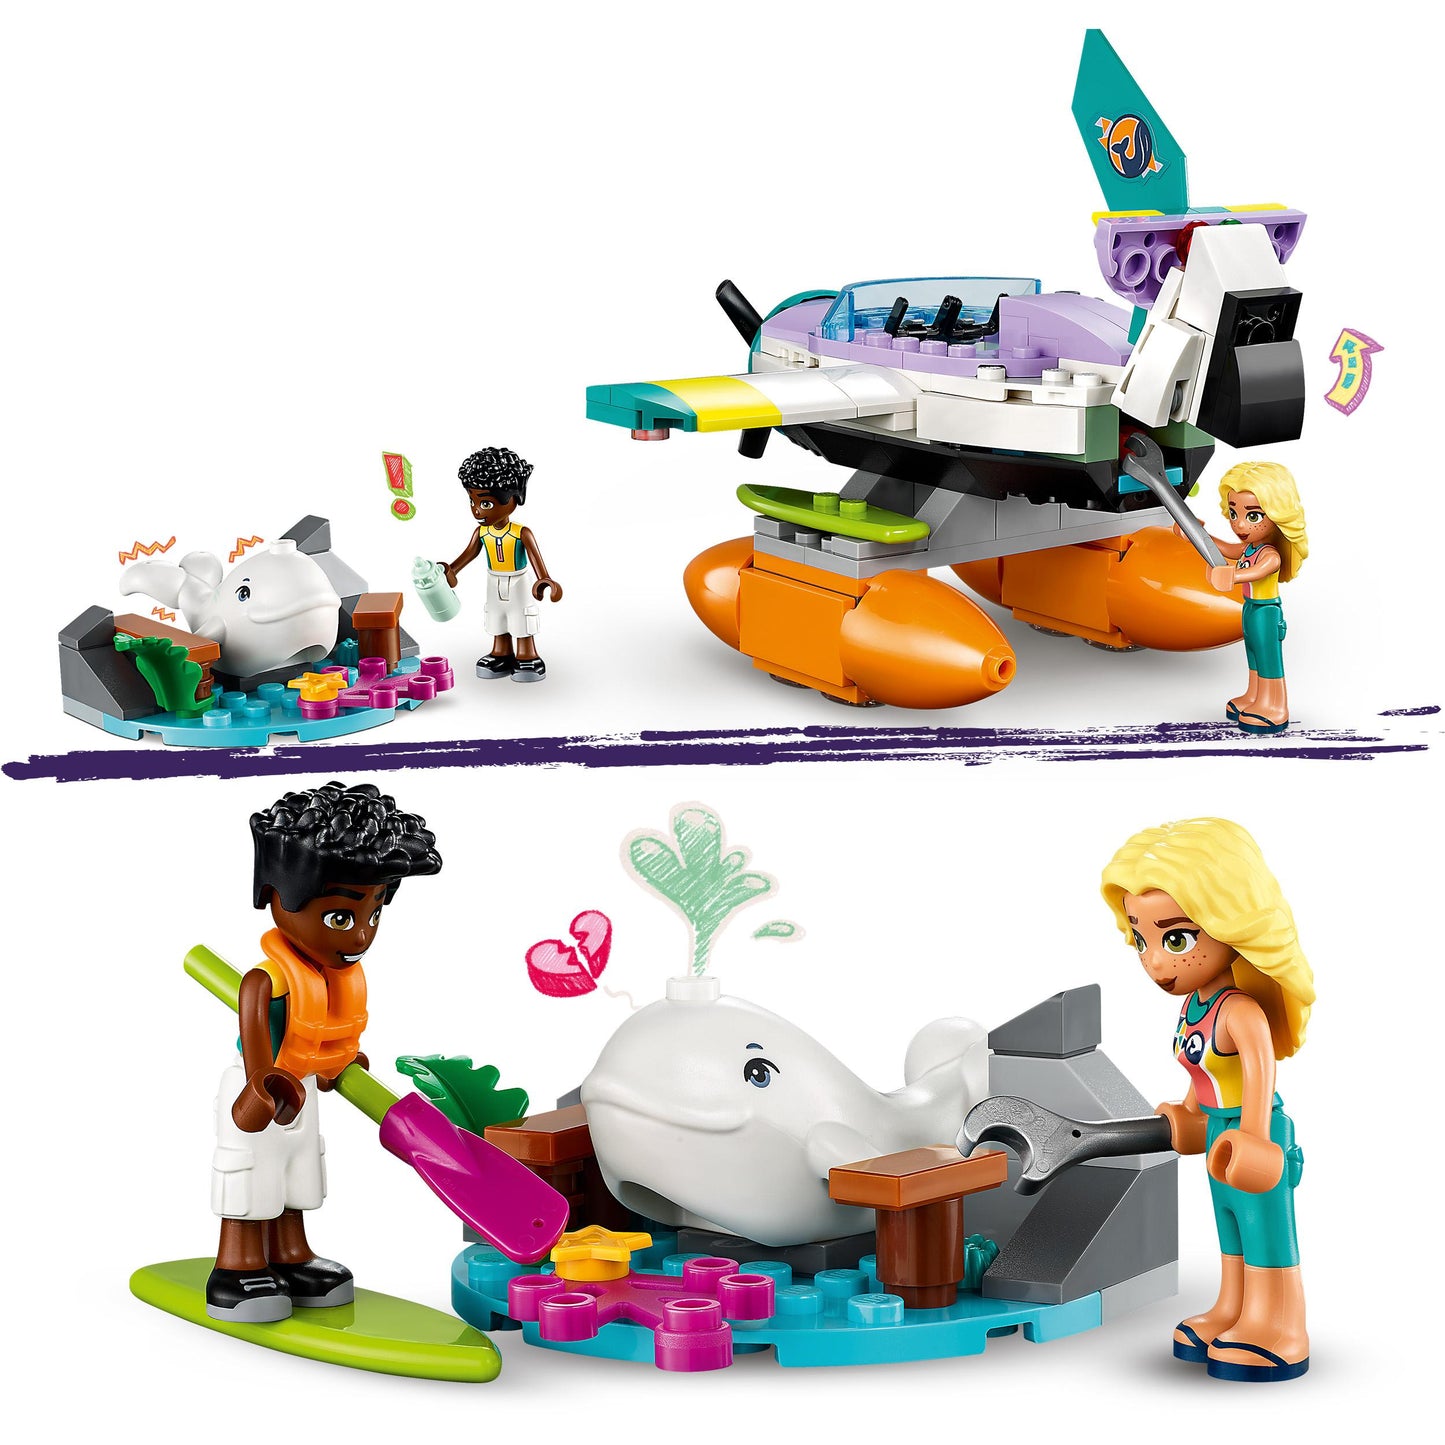 41752 LEGO Friends - Idrovolante di Salvataggio